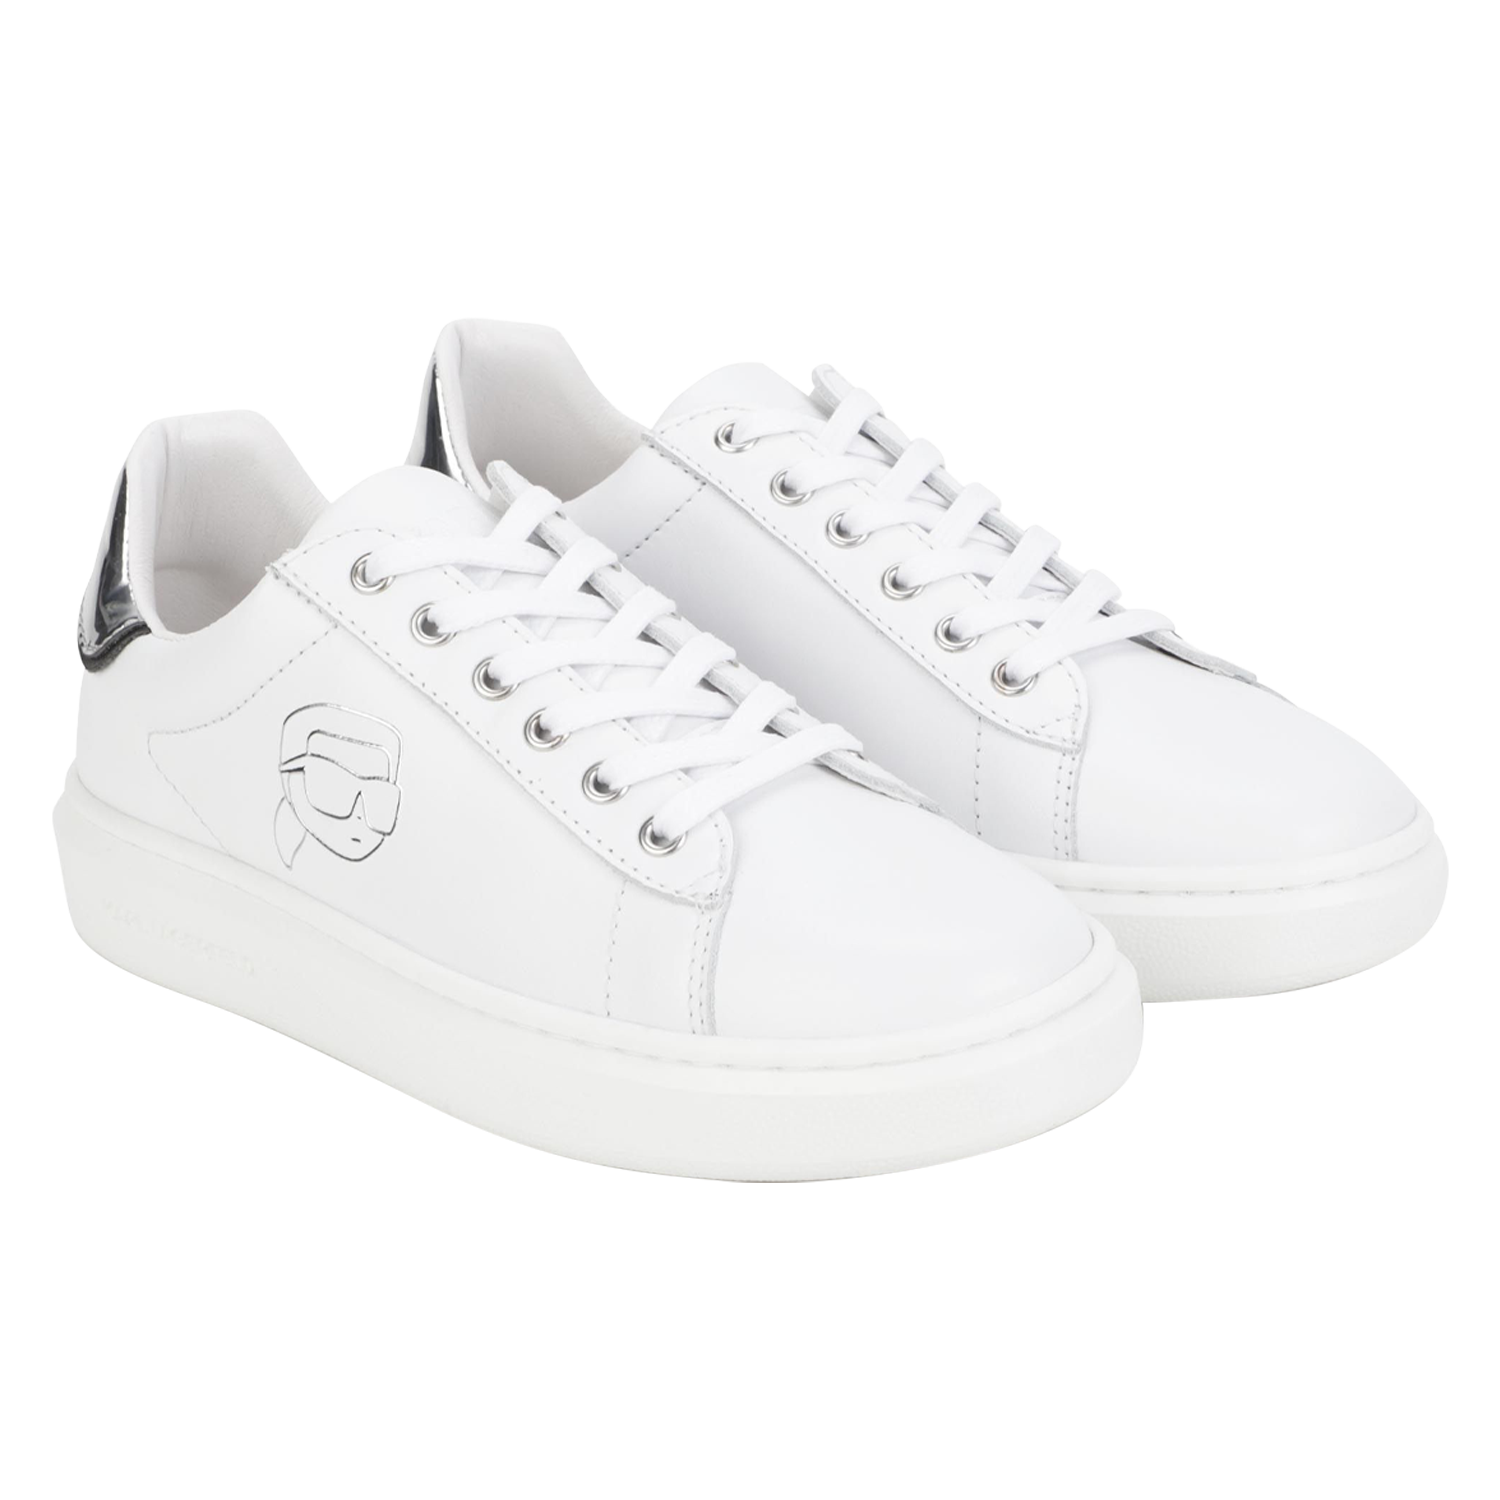 Karl Lagerfeld Embossed Sneakers - White